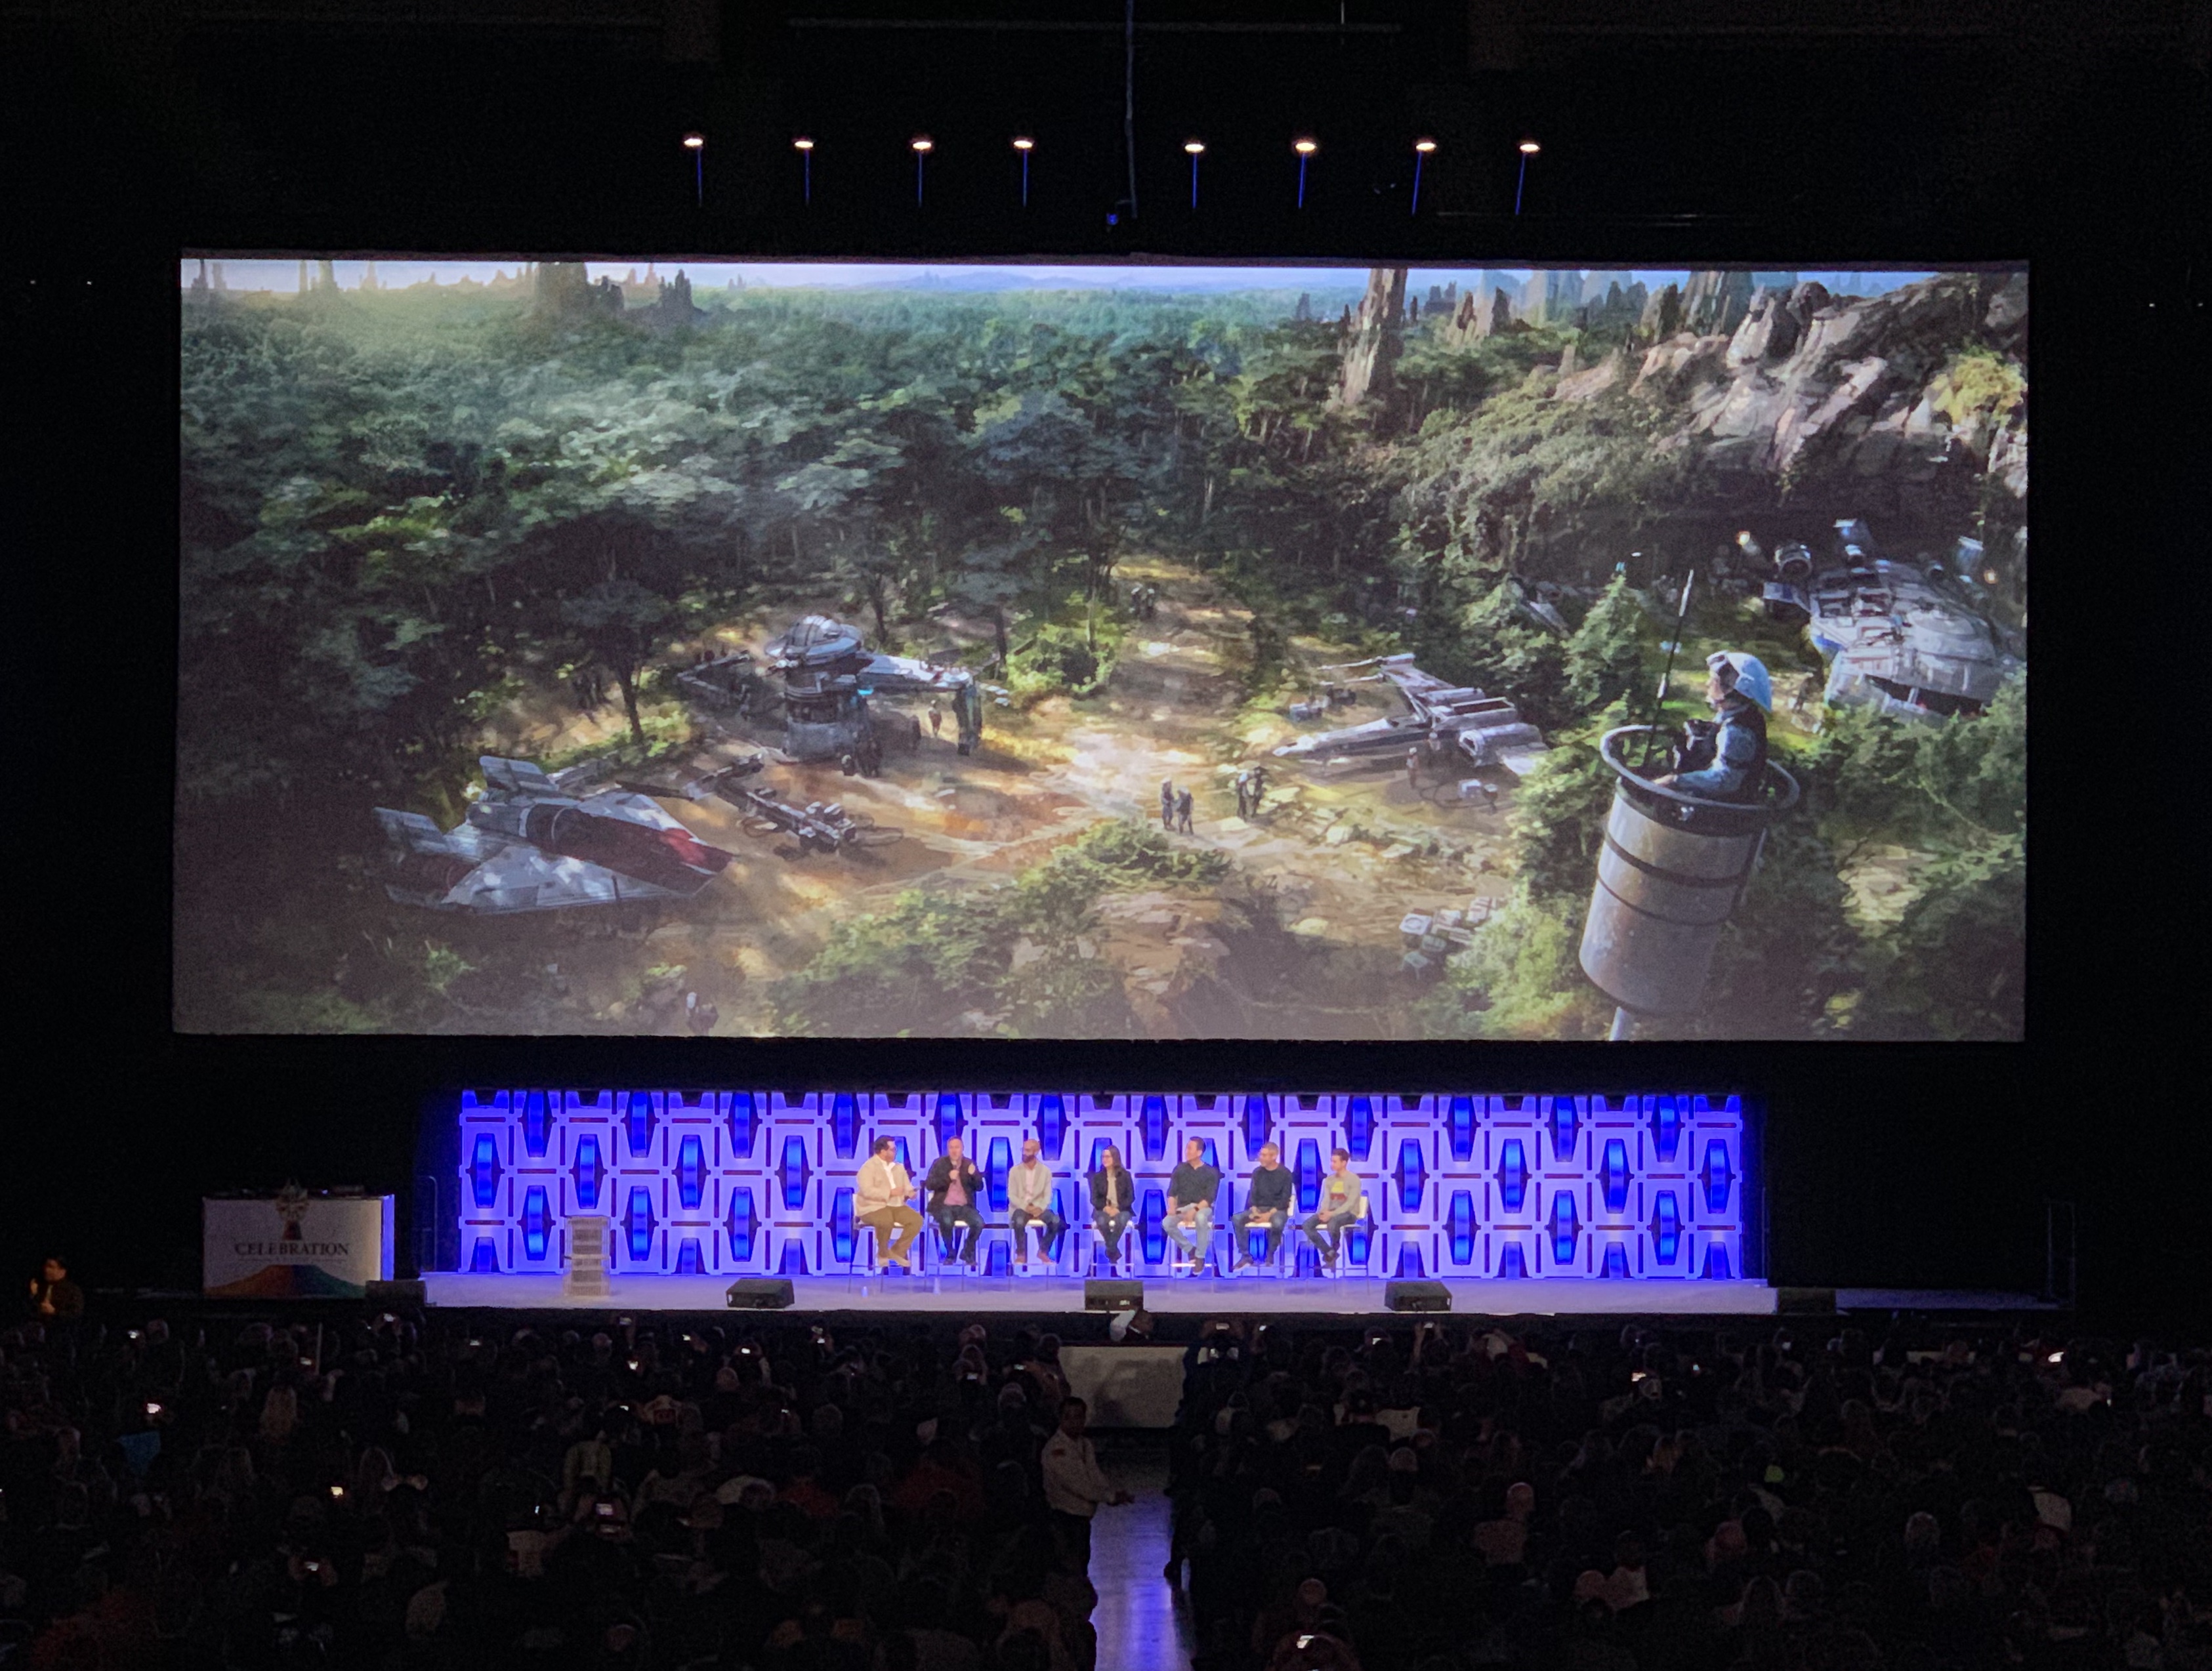 Un momento de la presentación de Galaxy's Edge durante Star Wars Celebration 2019 Chicago. / Foto: Impremedia